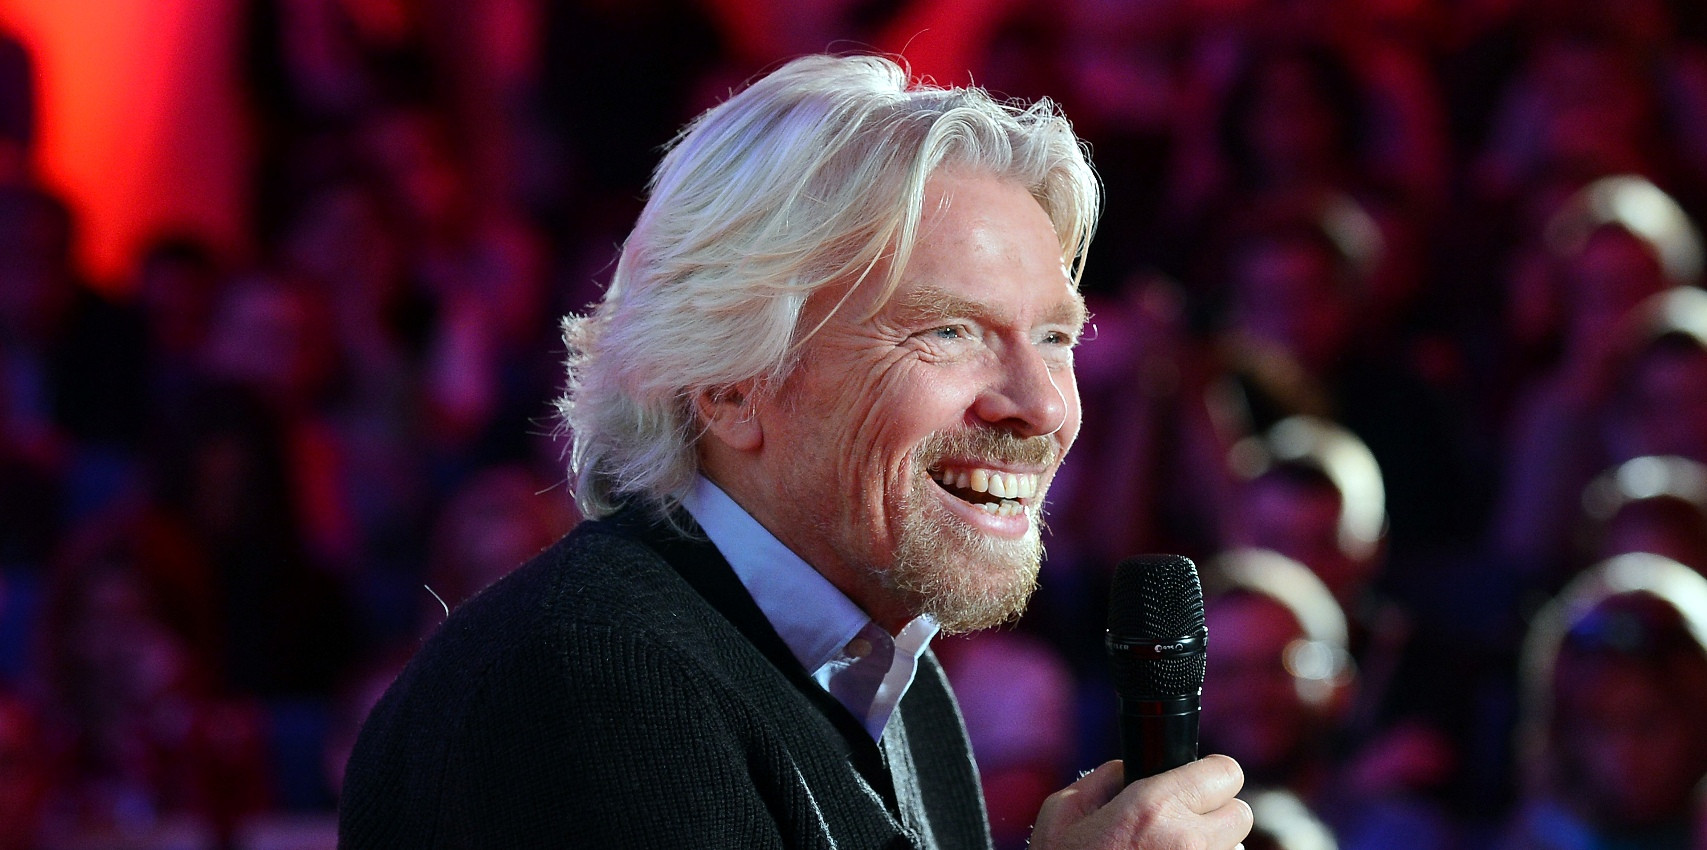 Richard Branson, người điều hành hơn 400 công ty trên thế giới: Mặc kệ nó, làm tới đi! - Ảnh 2.